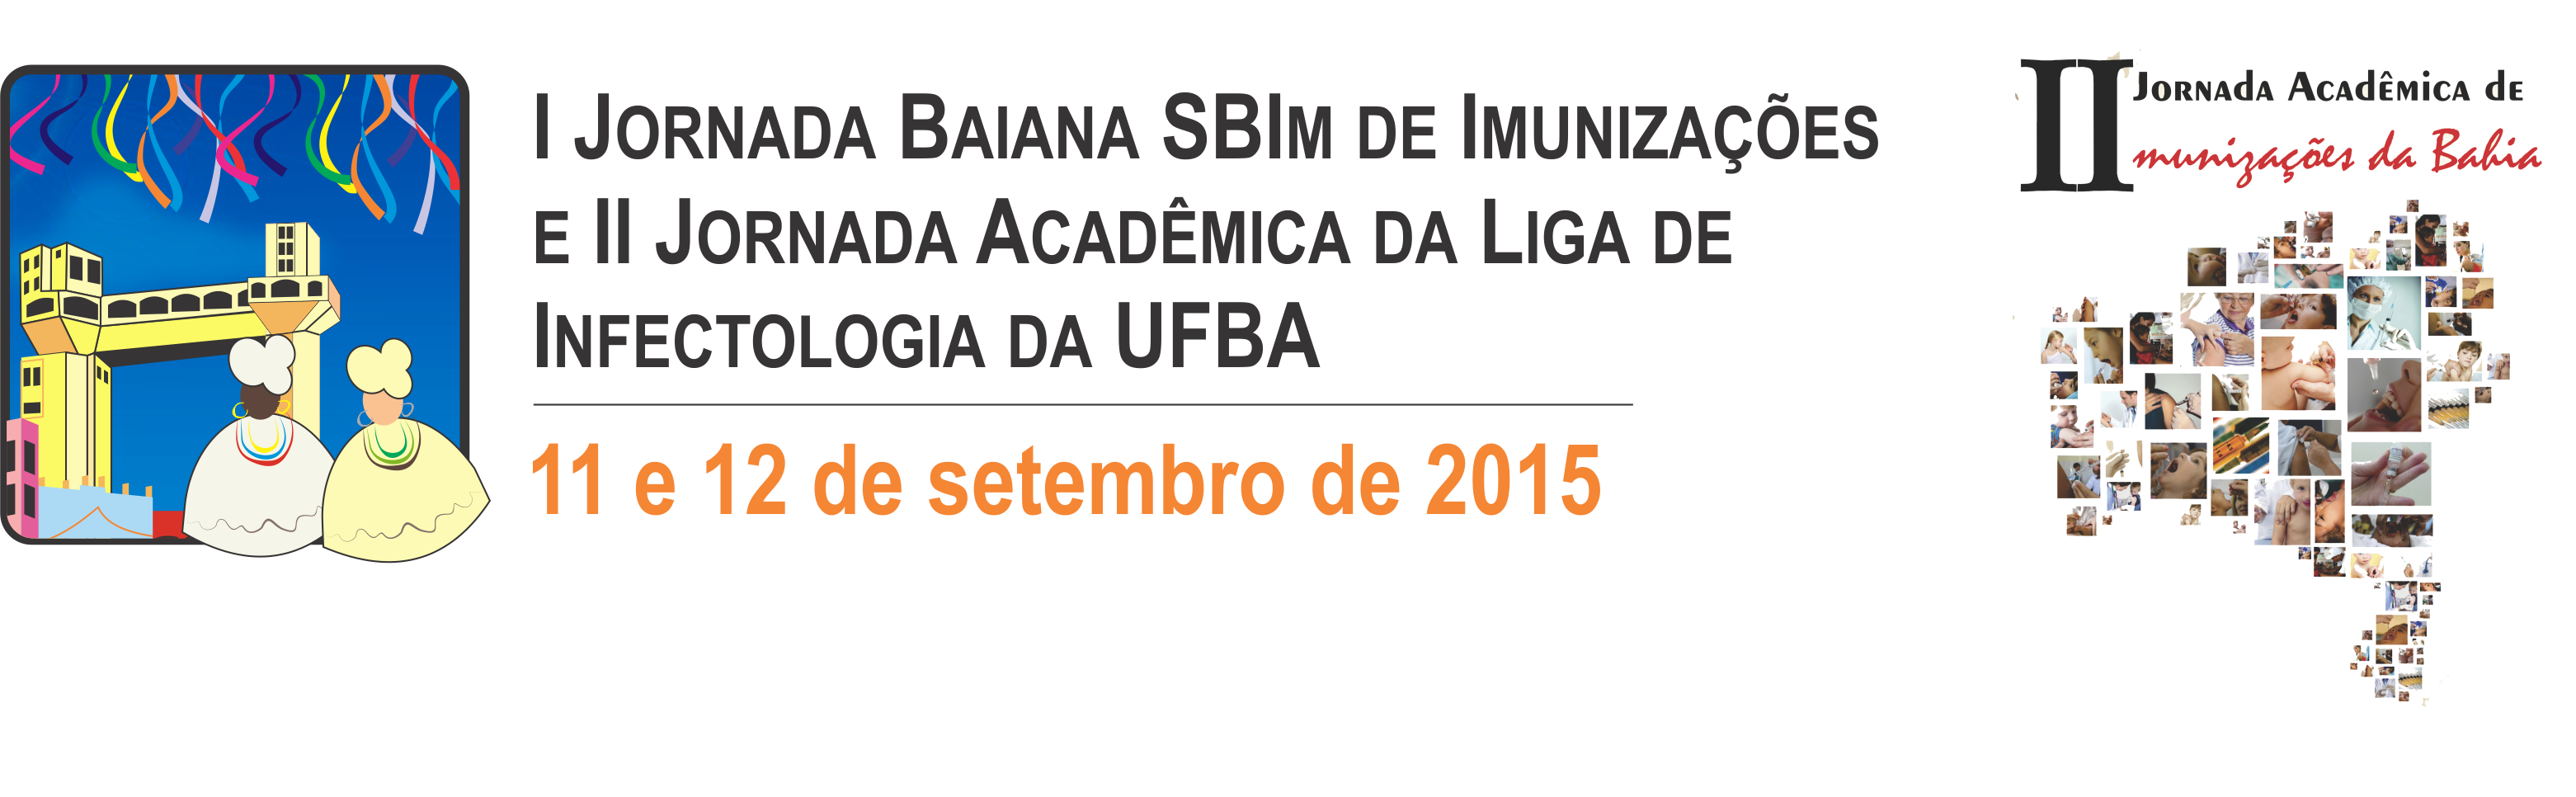 I Jornada Baiana SBIm de Imunizações/ II Jornada Acadêmica da Liga de Infectologia da UFBA